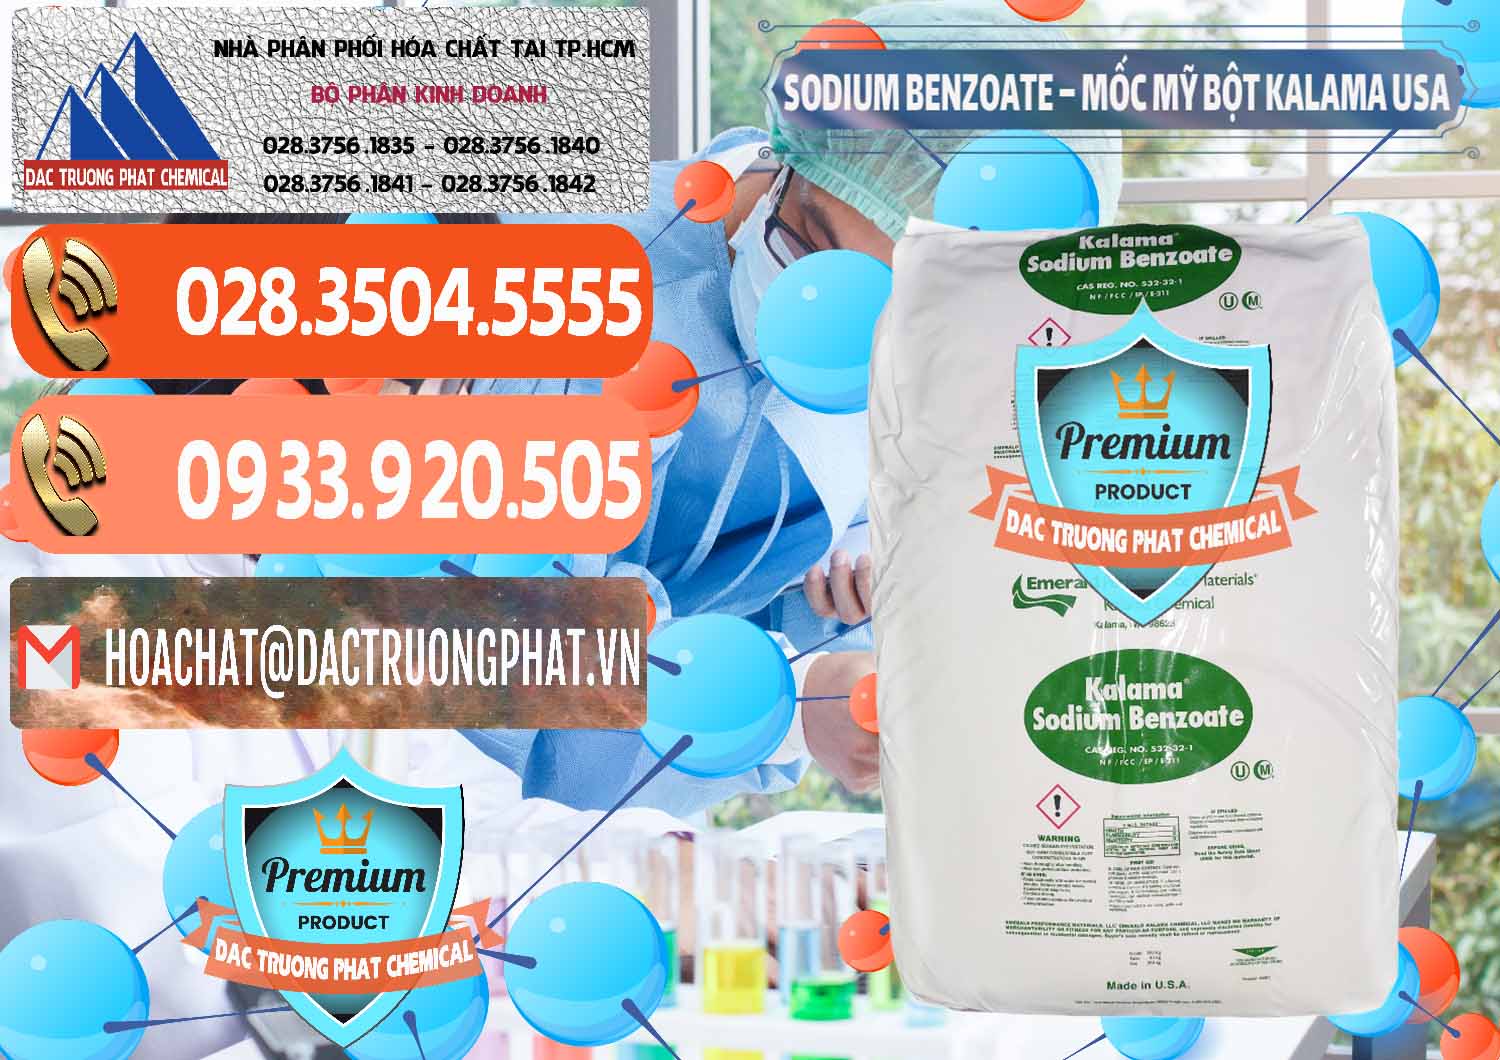 Cty chuyên bán & phân phối Sodium Benzoate - Mốc Bột Kalama Food Grade Mỹ Usa - 0136 - Công ty chuyên bán & phân phối hóa chất tại TP.HCM - hoachatmientay.com